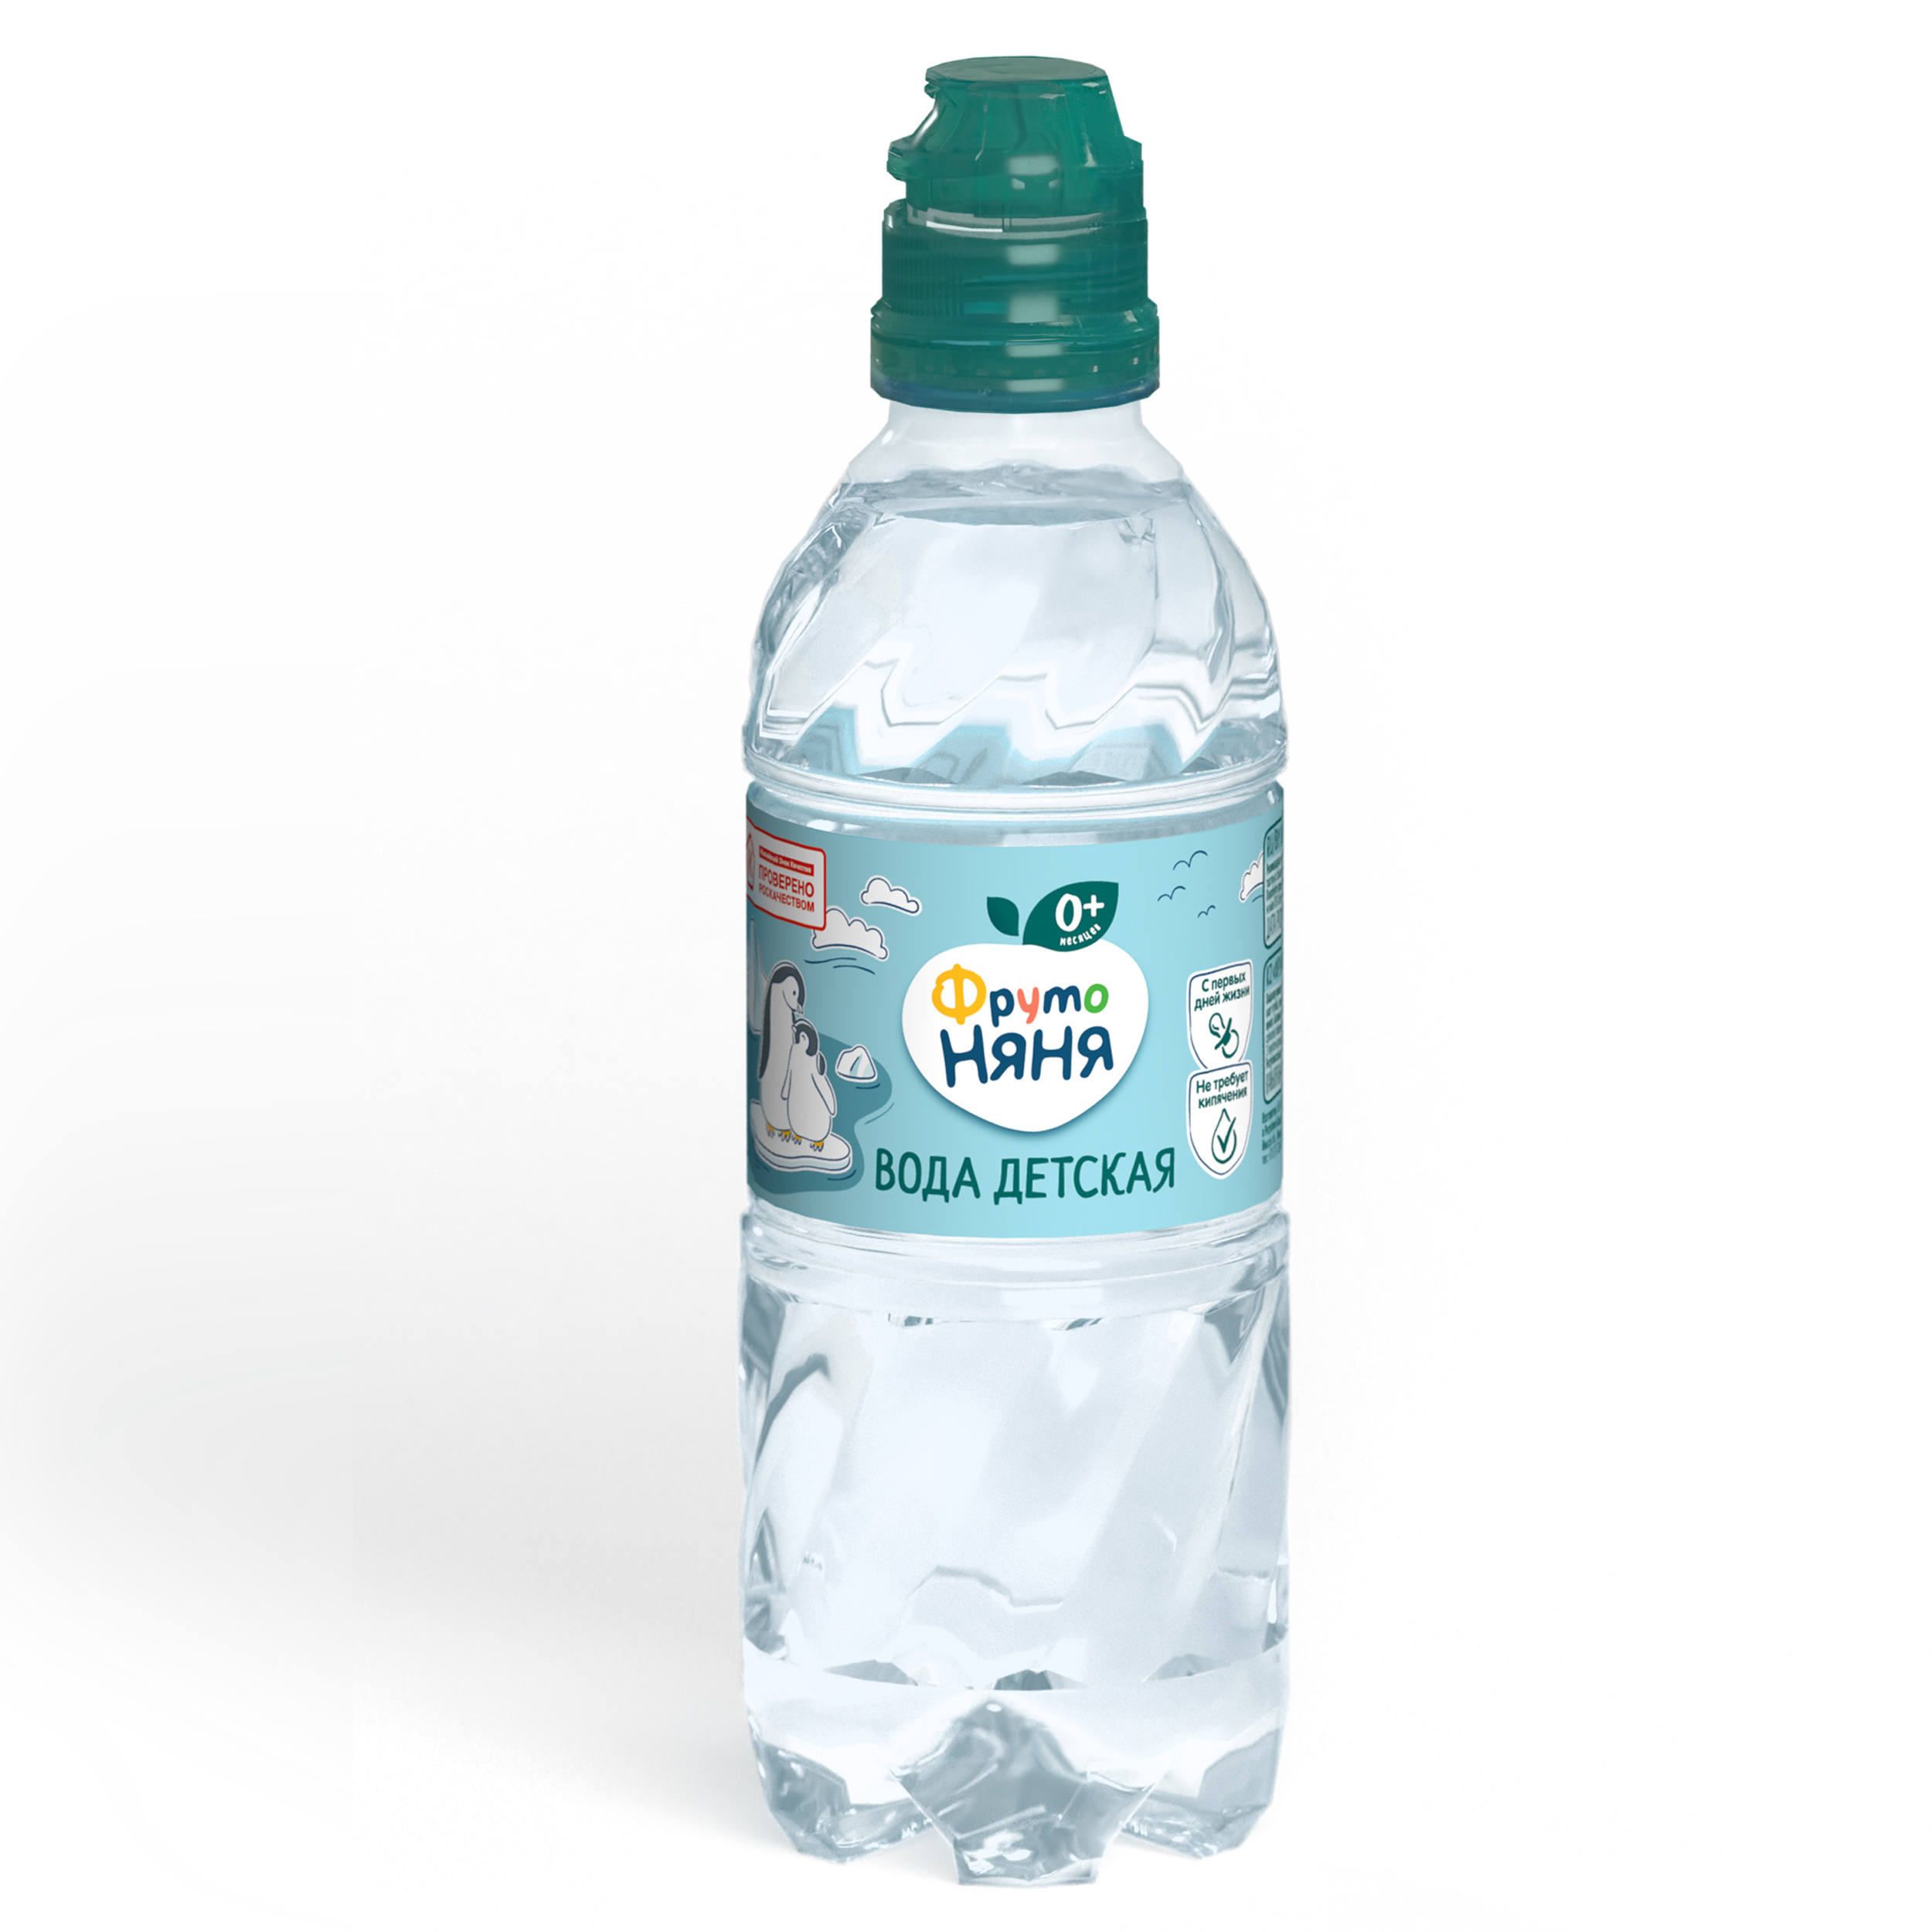 Детская вода питьевая Фруто Няня негазированная 330 мл, 1 шт